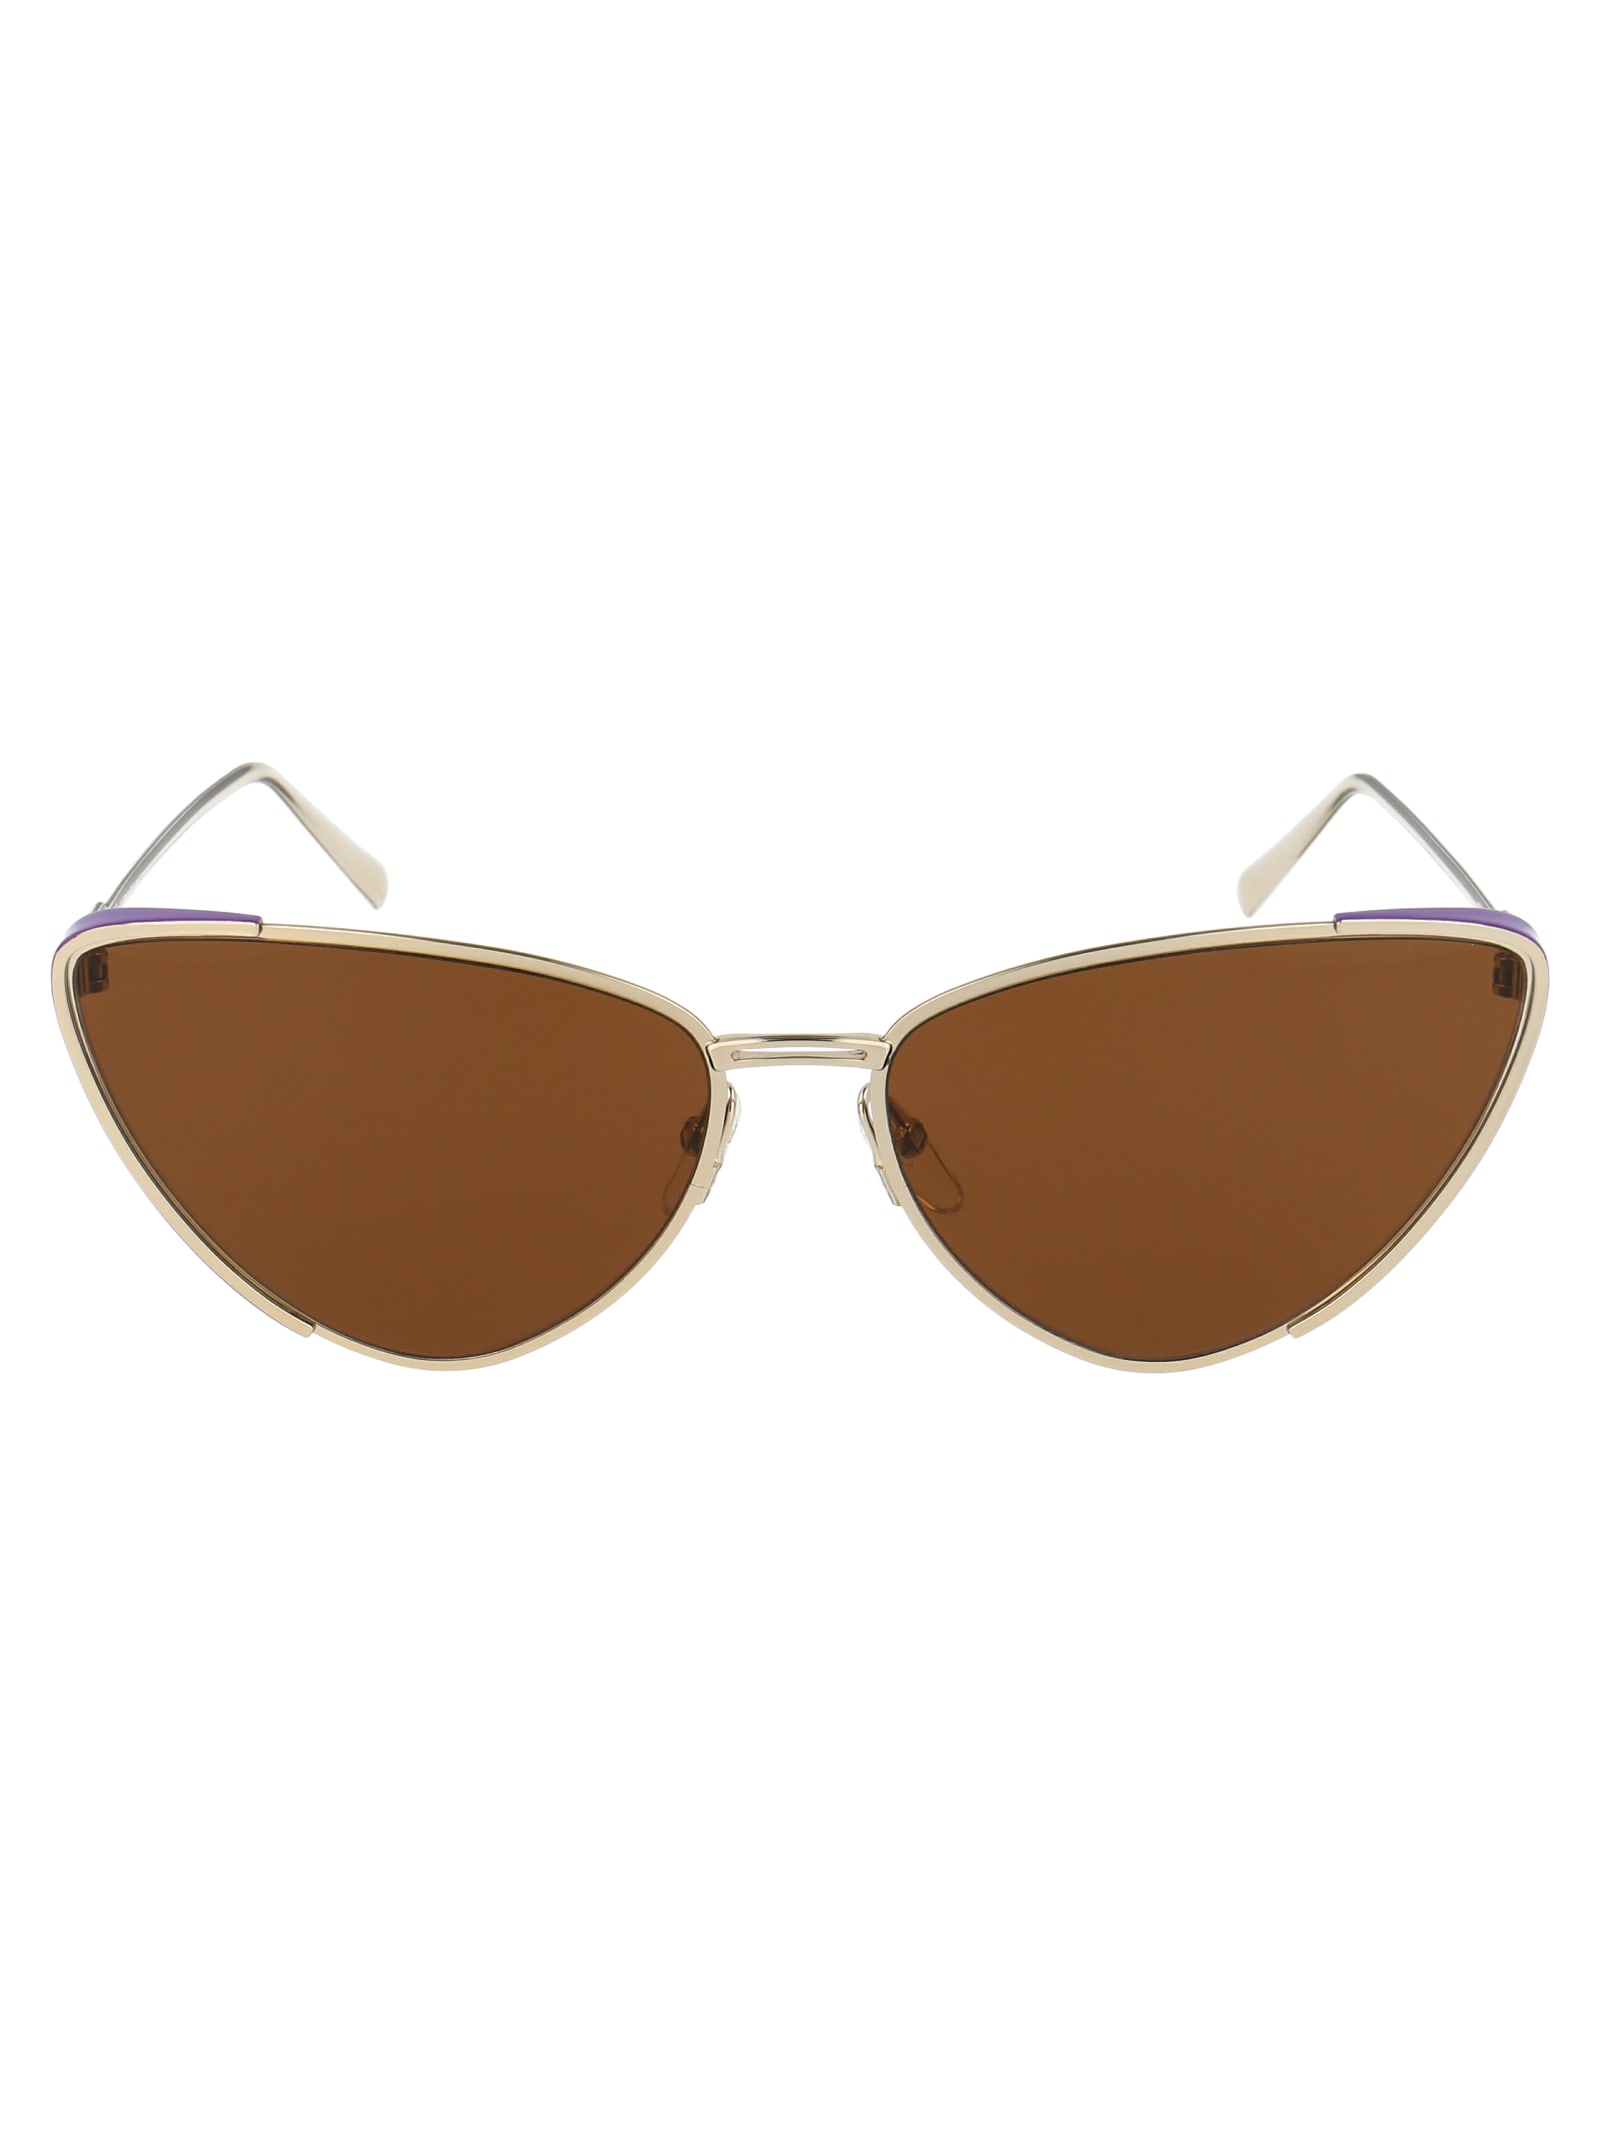 Ferragamo Sf206s Sunglasses In 736 Light Gold